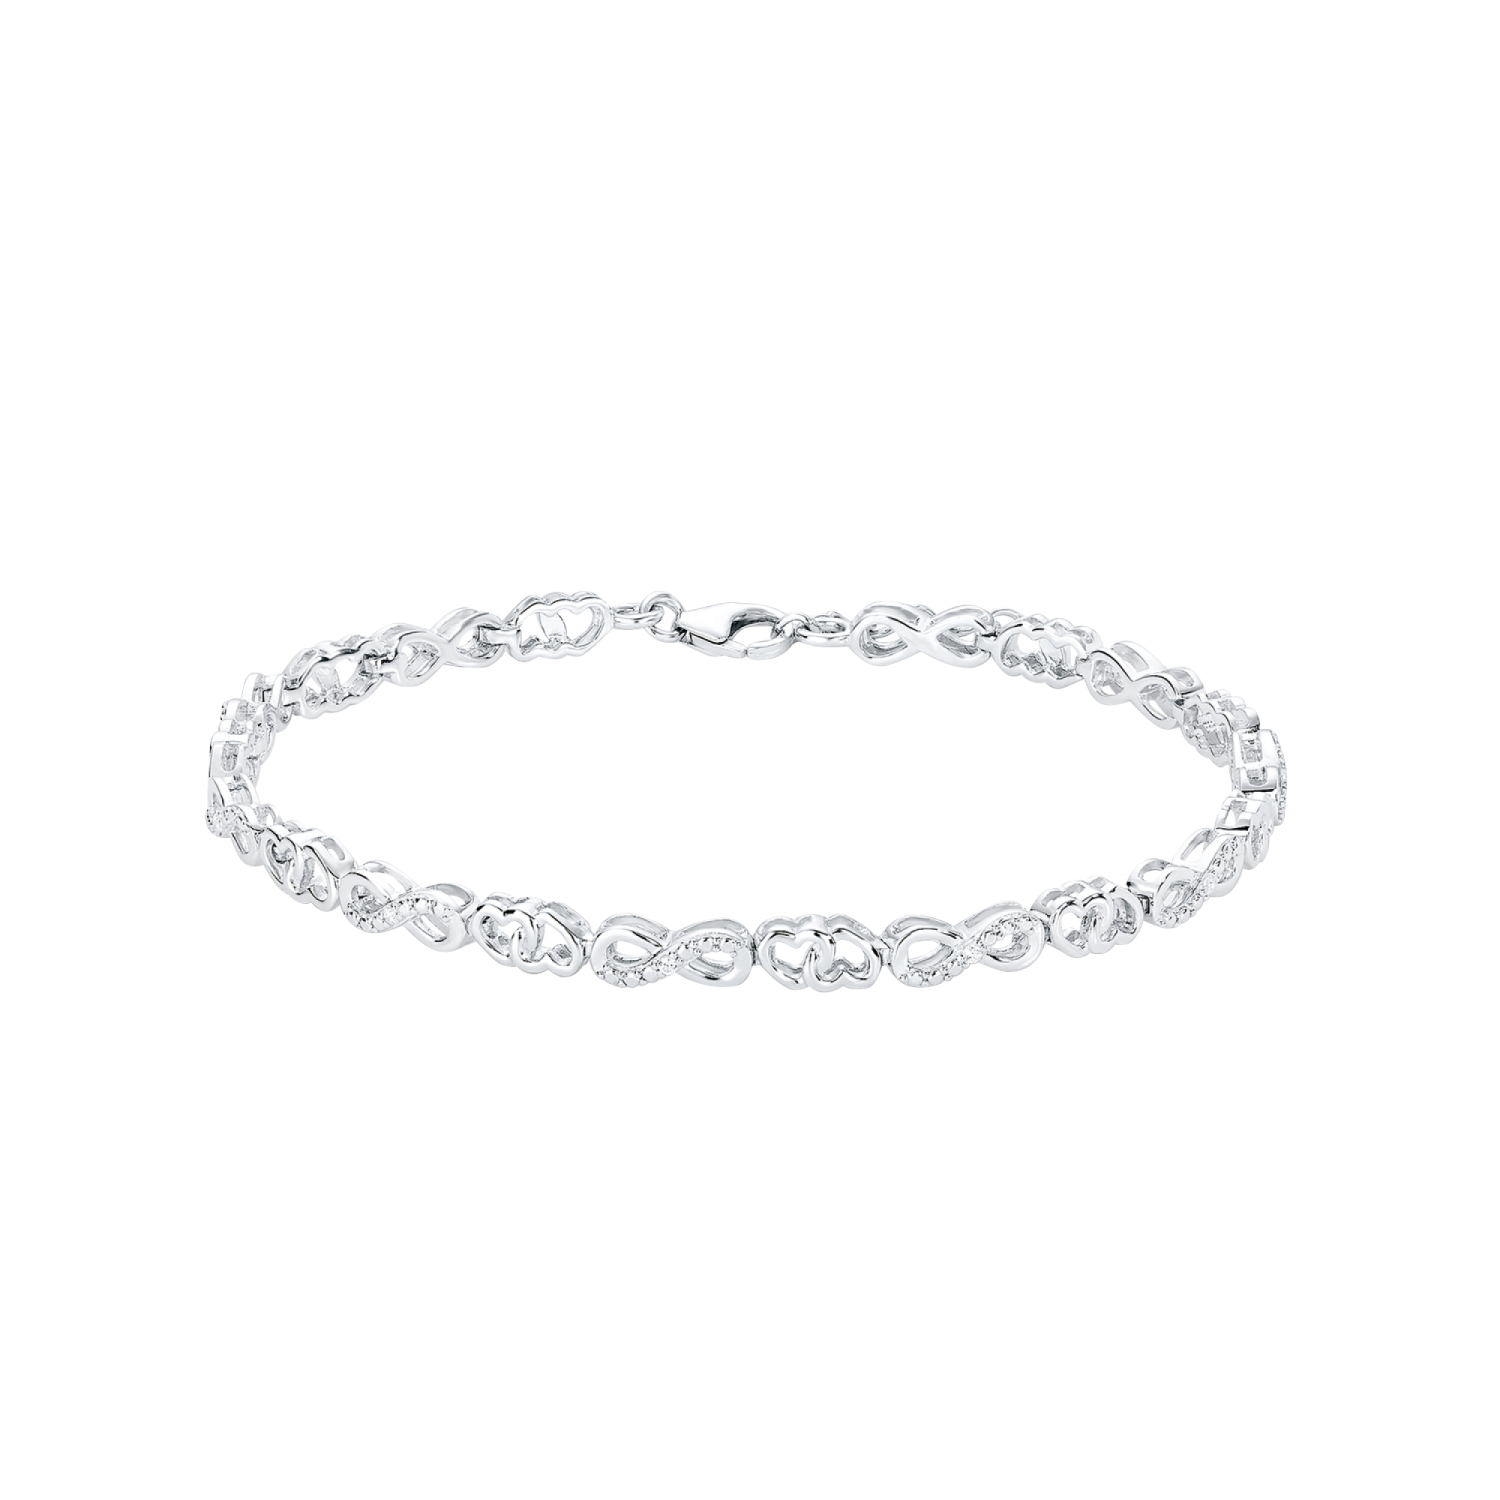 Damen Armband 925 Silber oval-Design mit Zirkonia-Steine Venezianer-Armkette 